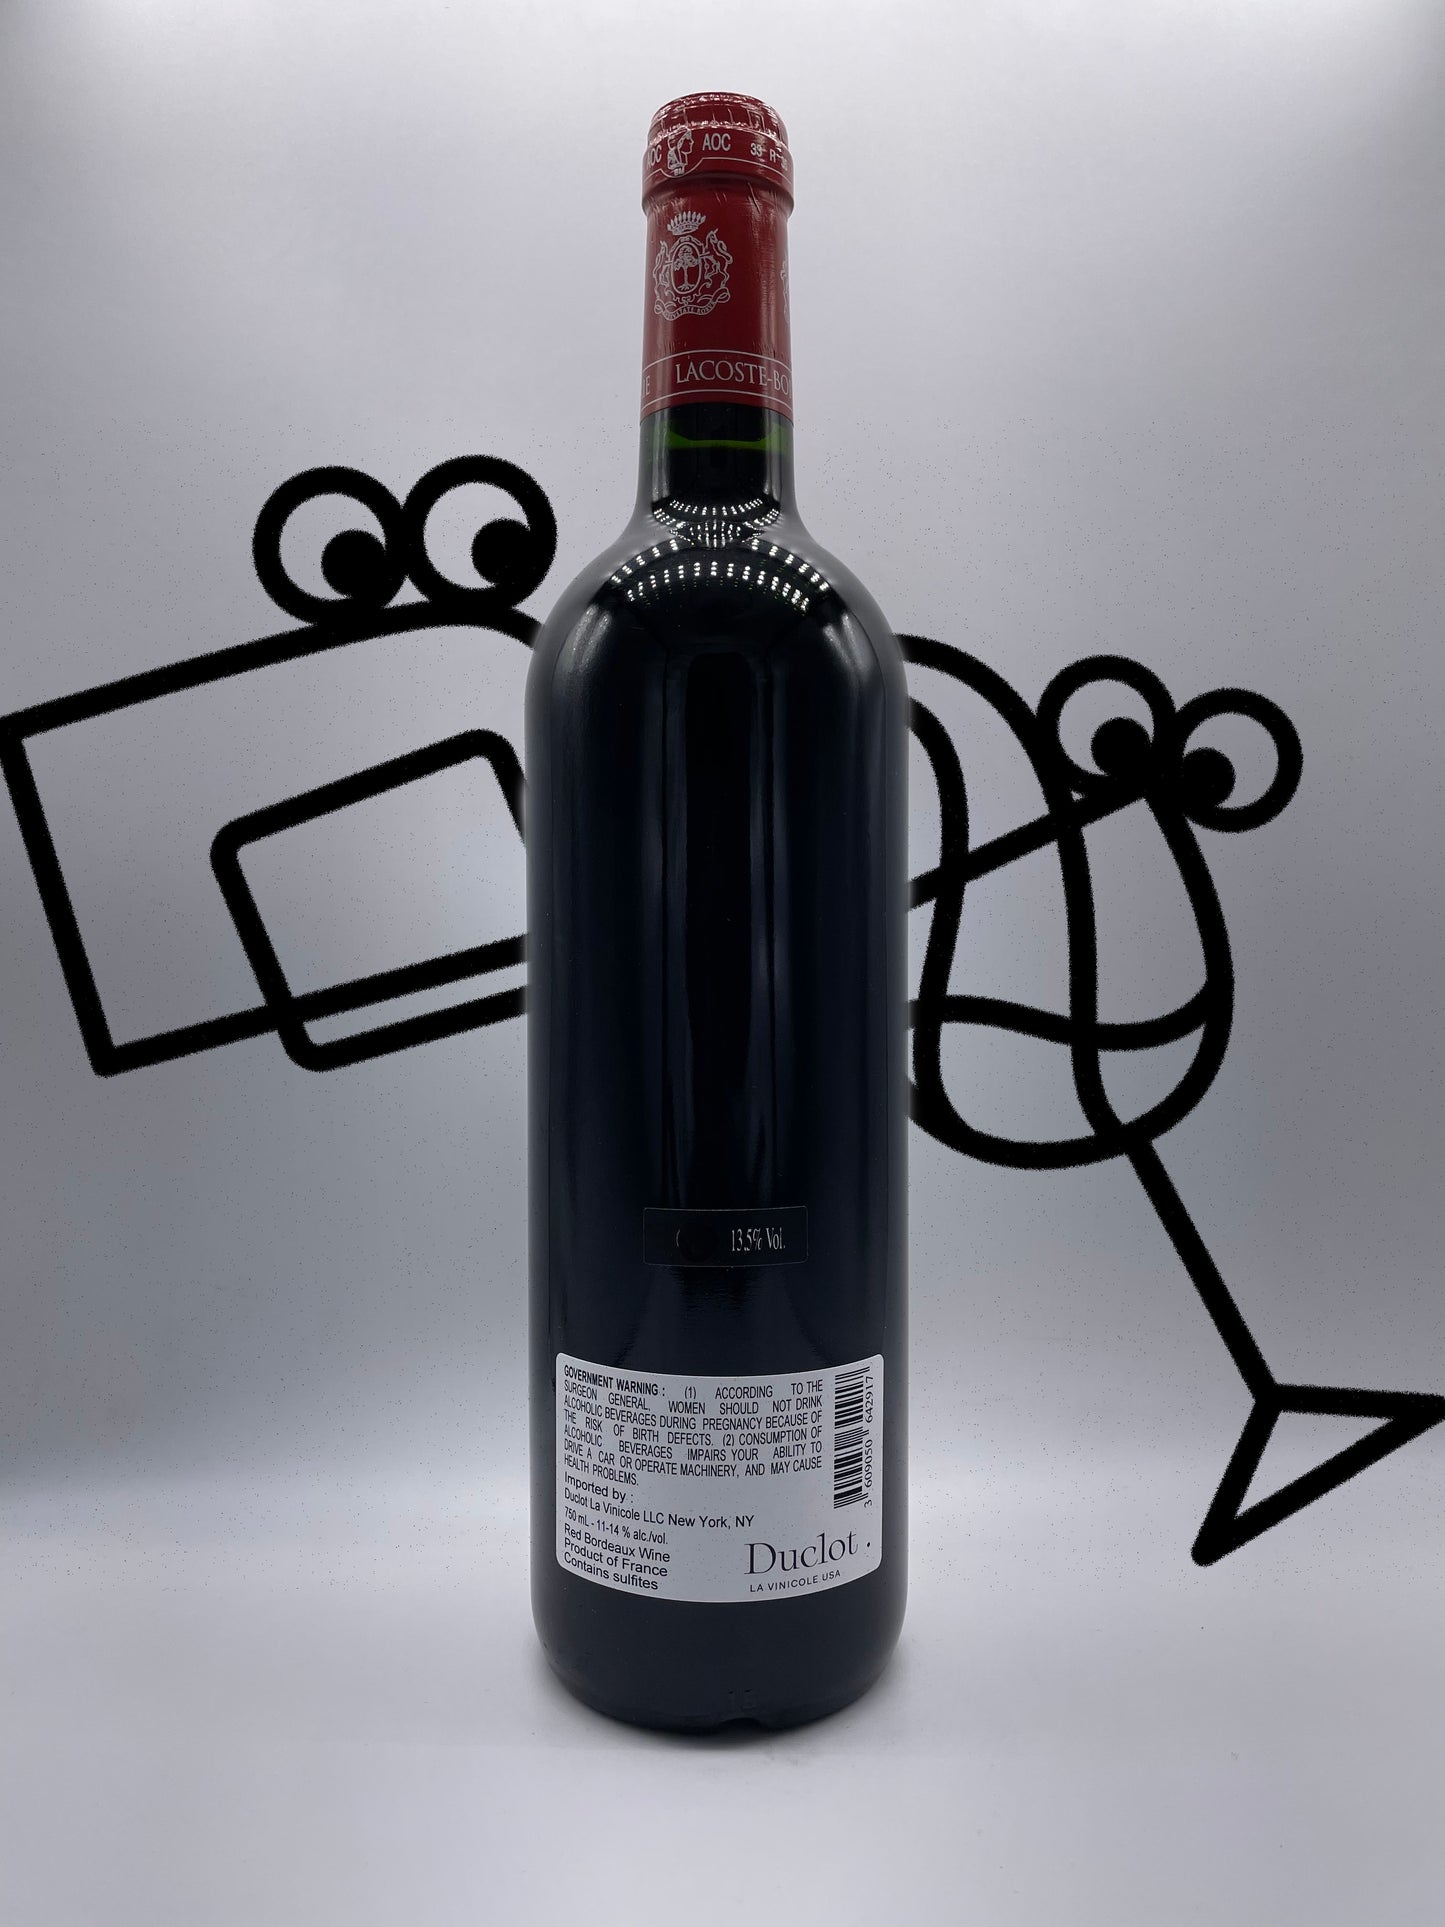 Lacoste-Borie Pauillac 2014 Bordeaux, France - Williston Park Wines & Spirits